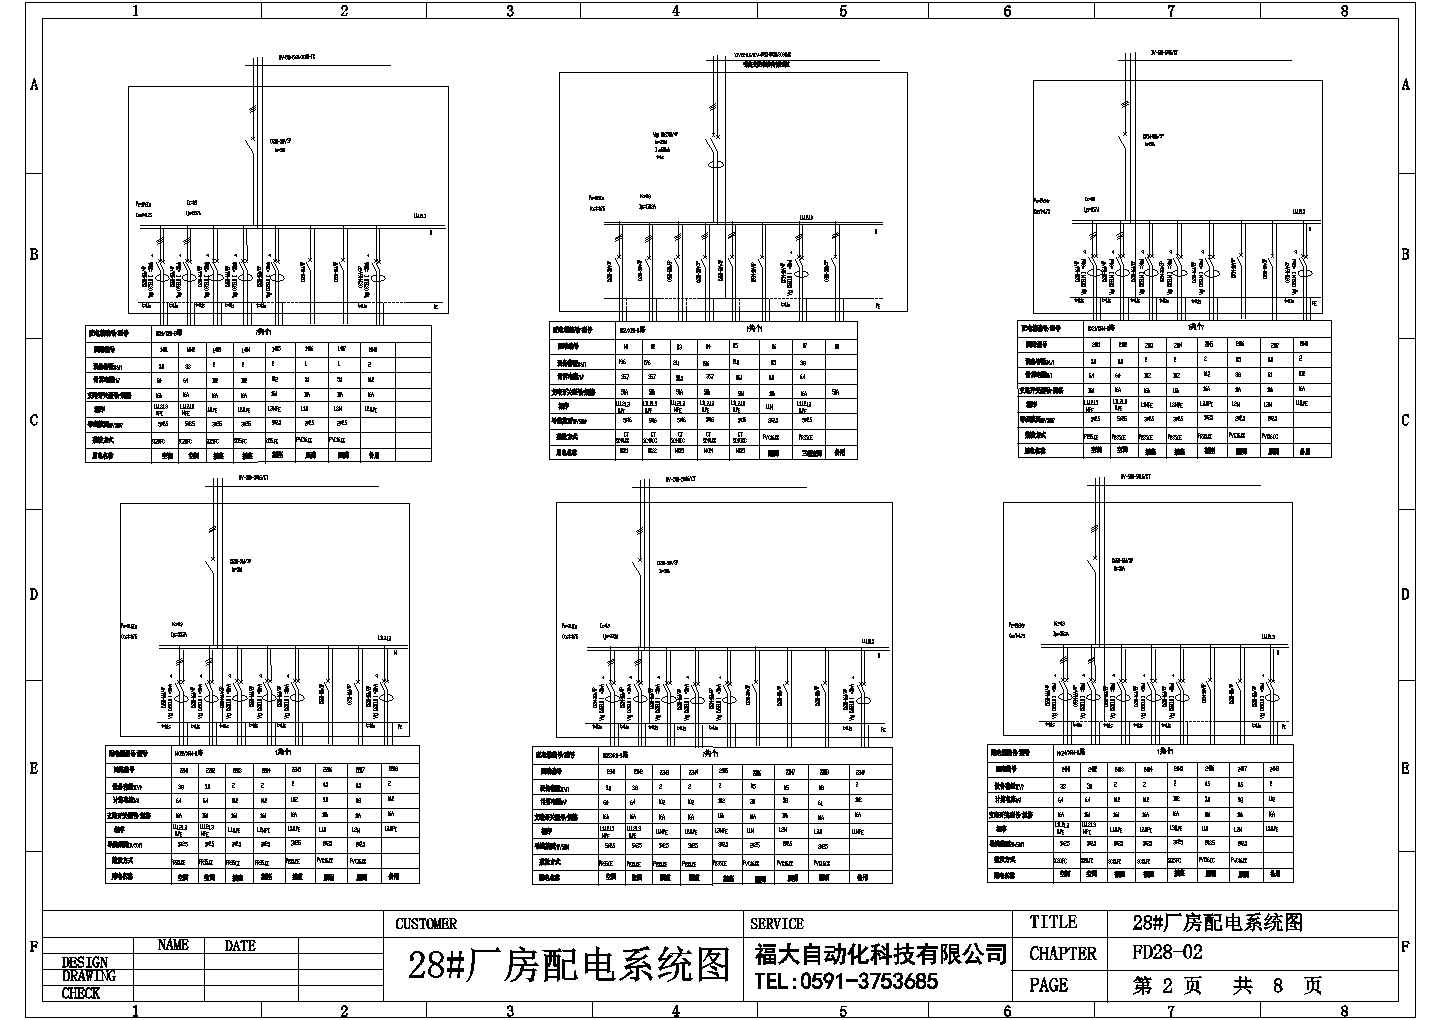 某高级配电CAD设计详细系统图